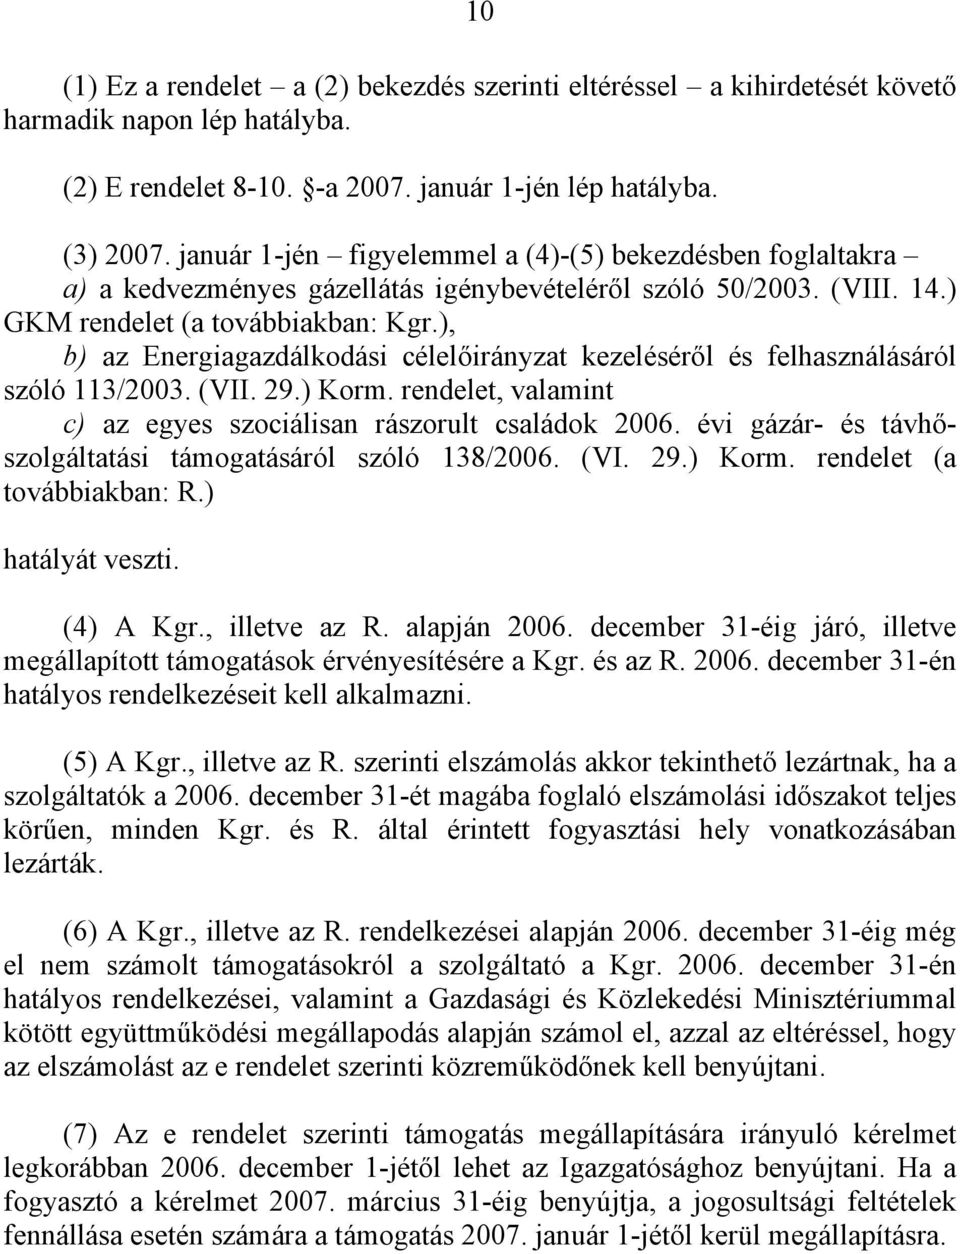 ), b) az Energiagazdálkodási célelőirányzat kezeléséről és felhasználásáról szóló 113/2003. (VII. 29.) Korm. rendelet, valamint c) az egyes szociálisan rászorult családok 2006.